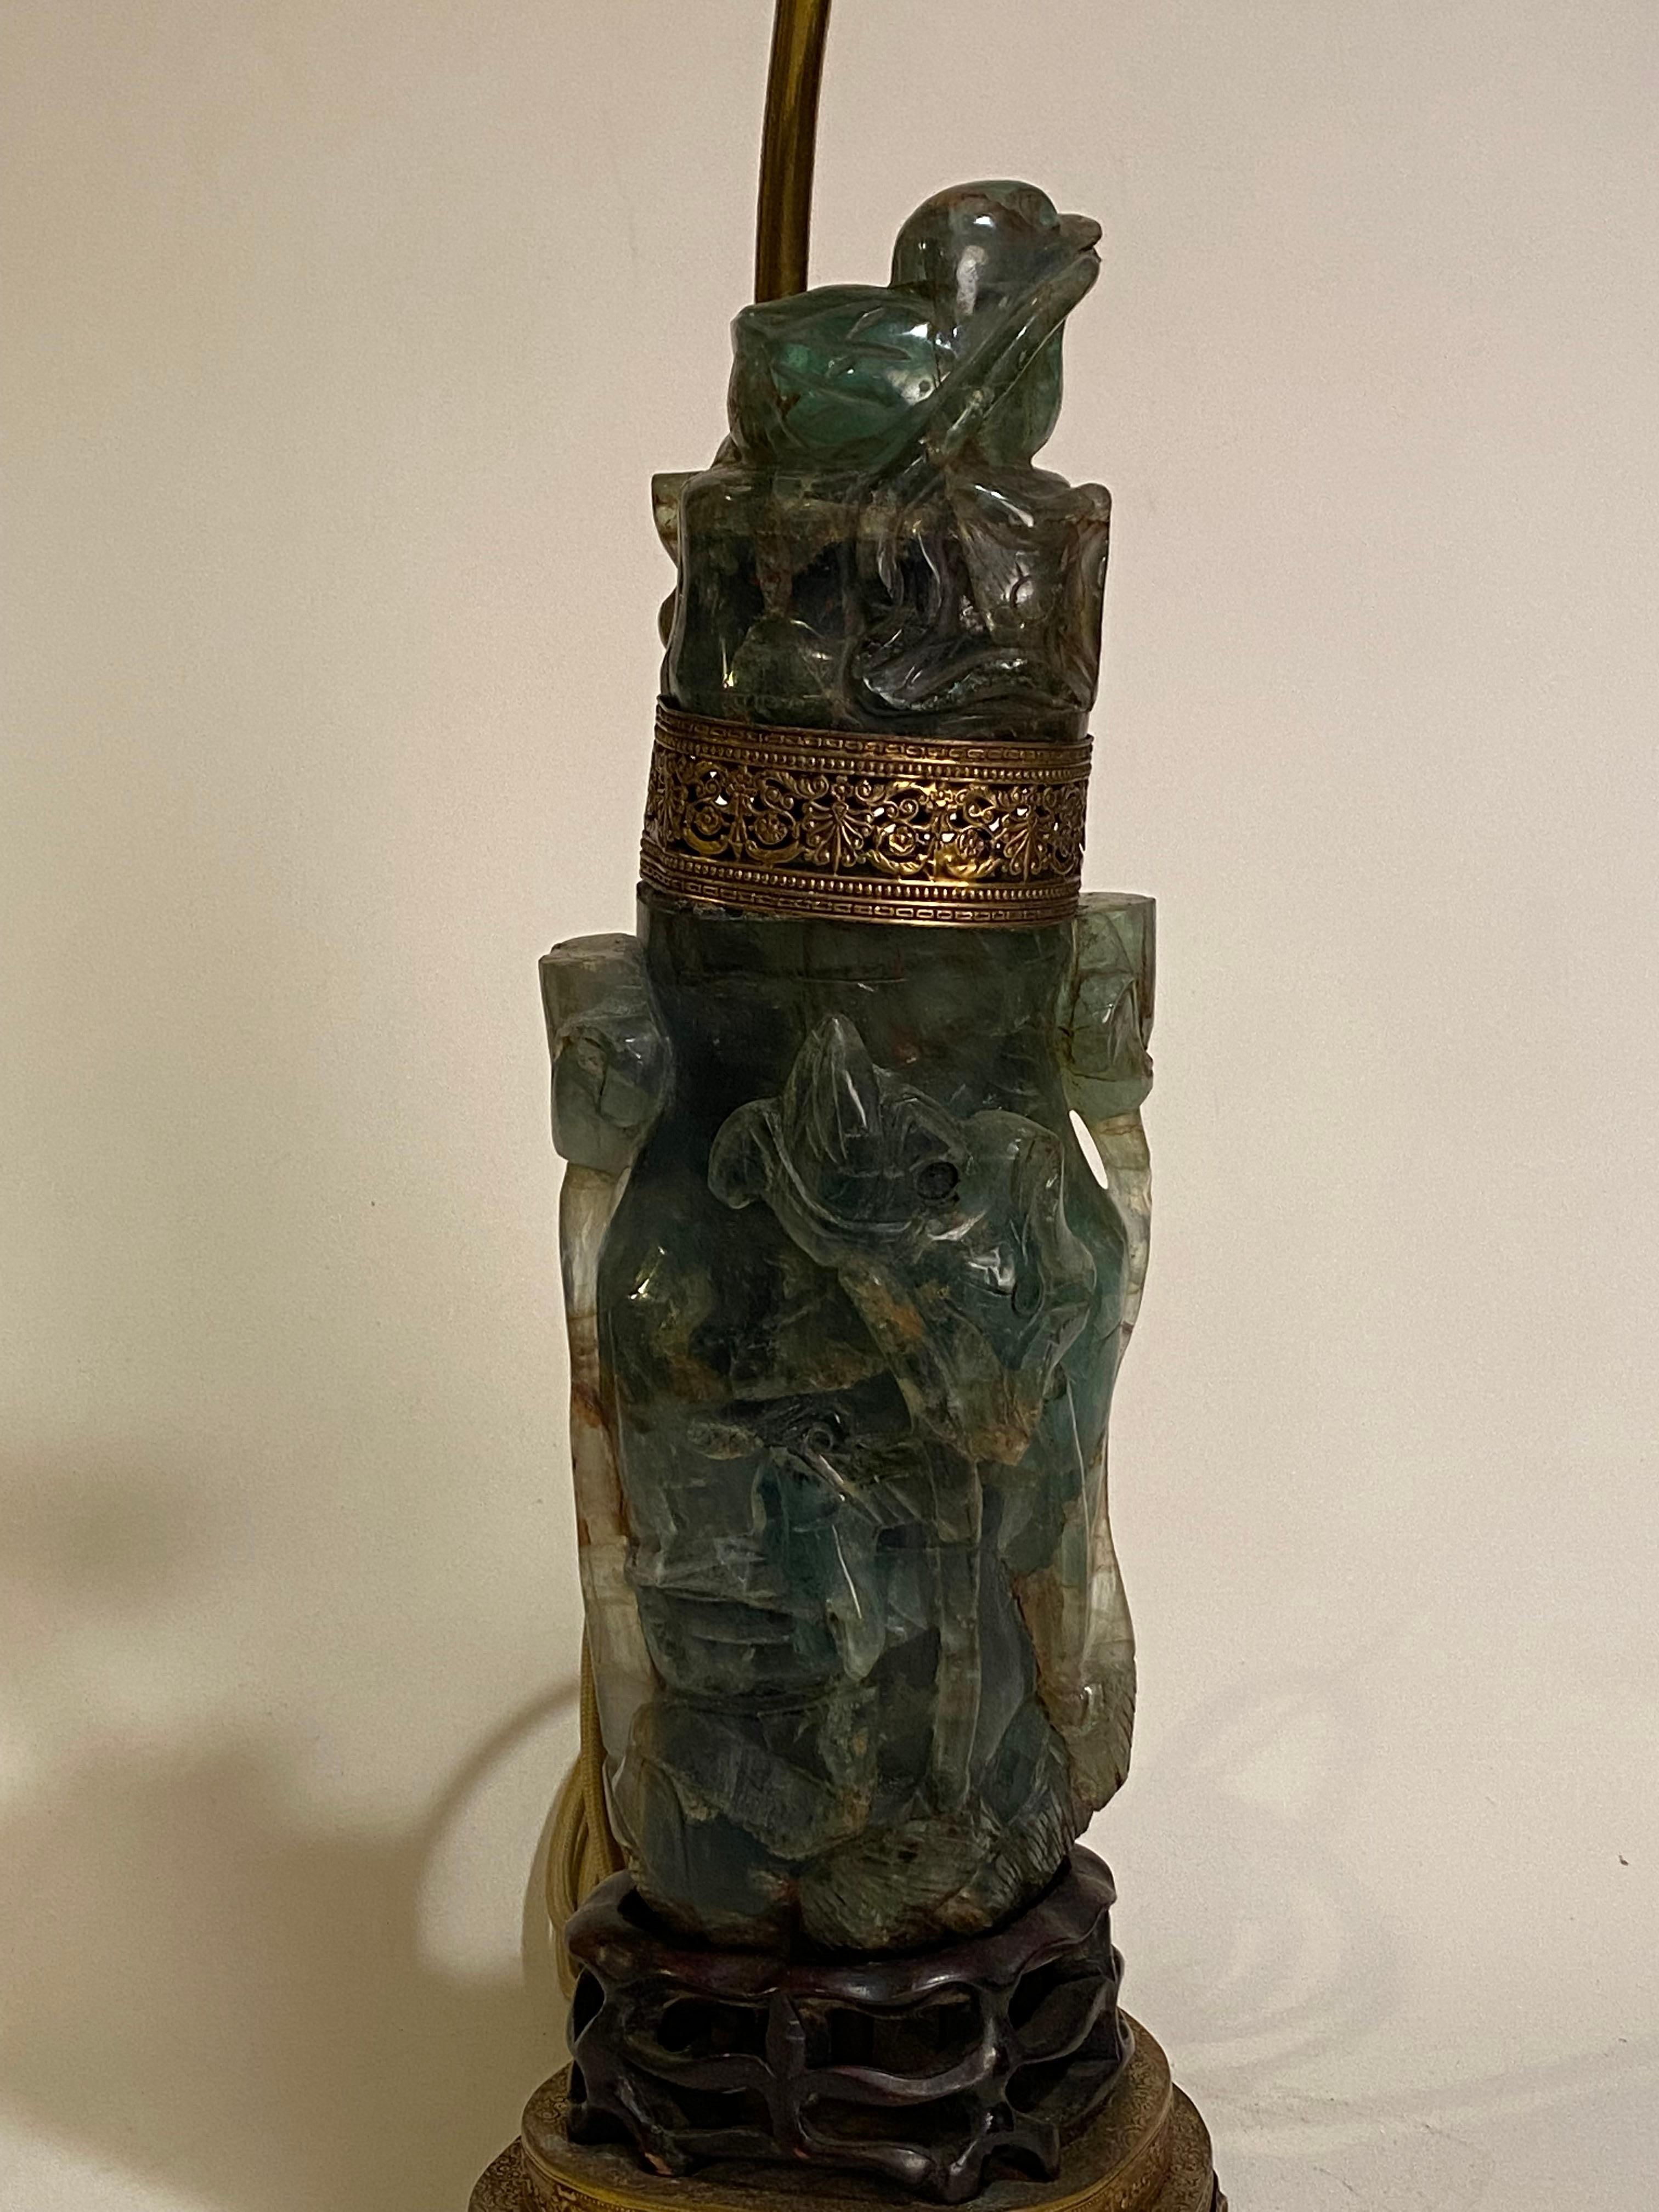 Lampe de table asiatique en jade/néphrite avec oiseau. Circa 1920. La partie intérieure s'allume séparément des deux feux supérieurs. La base en bois de rose sculpté et ajouré se termine par un pied en laiton filigrané. Une lampe distincte et